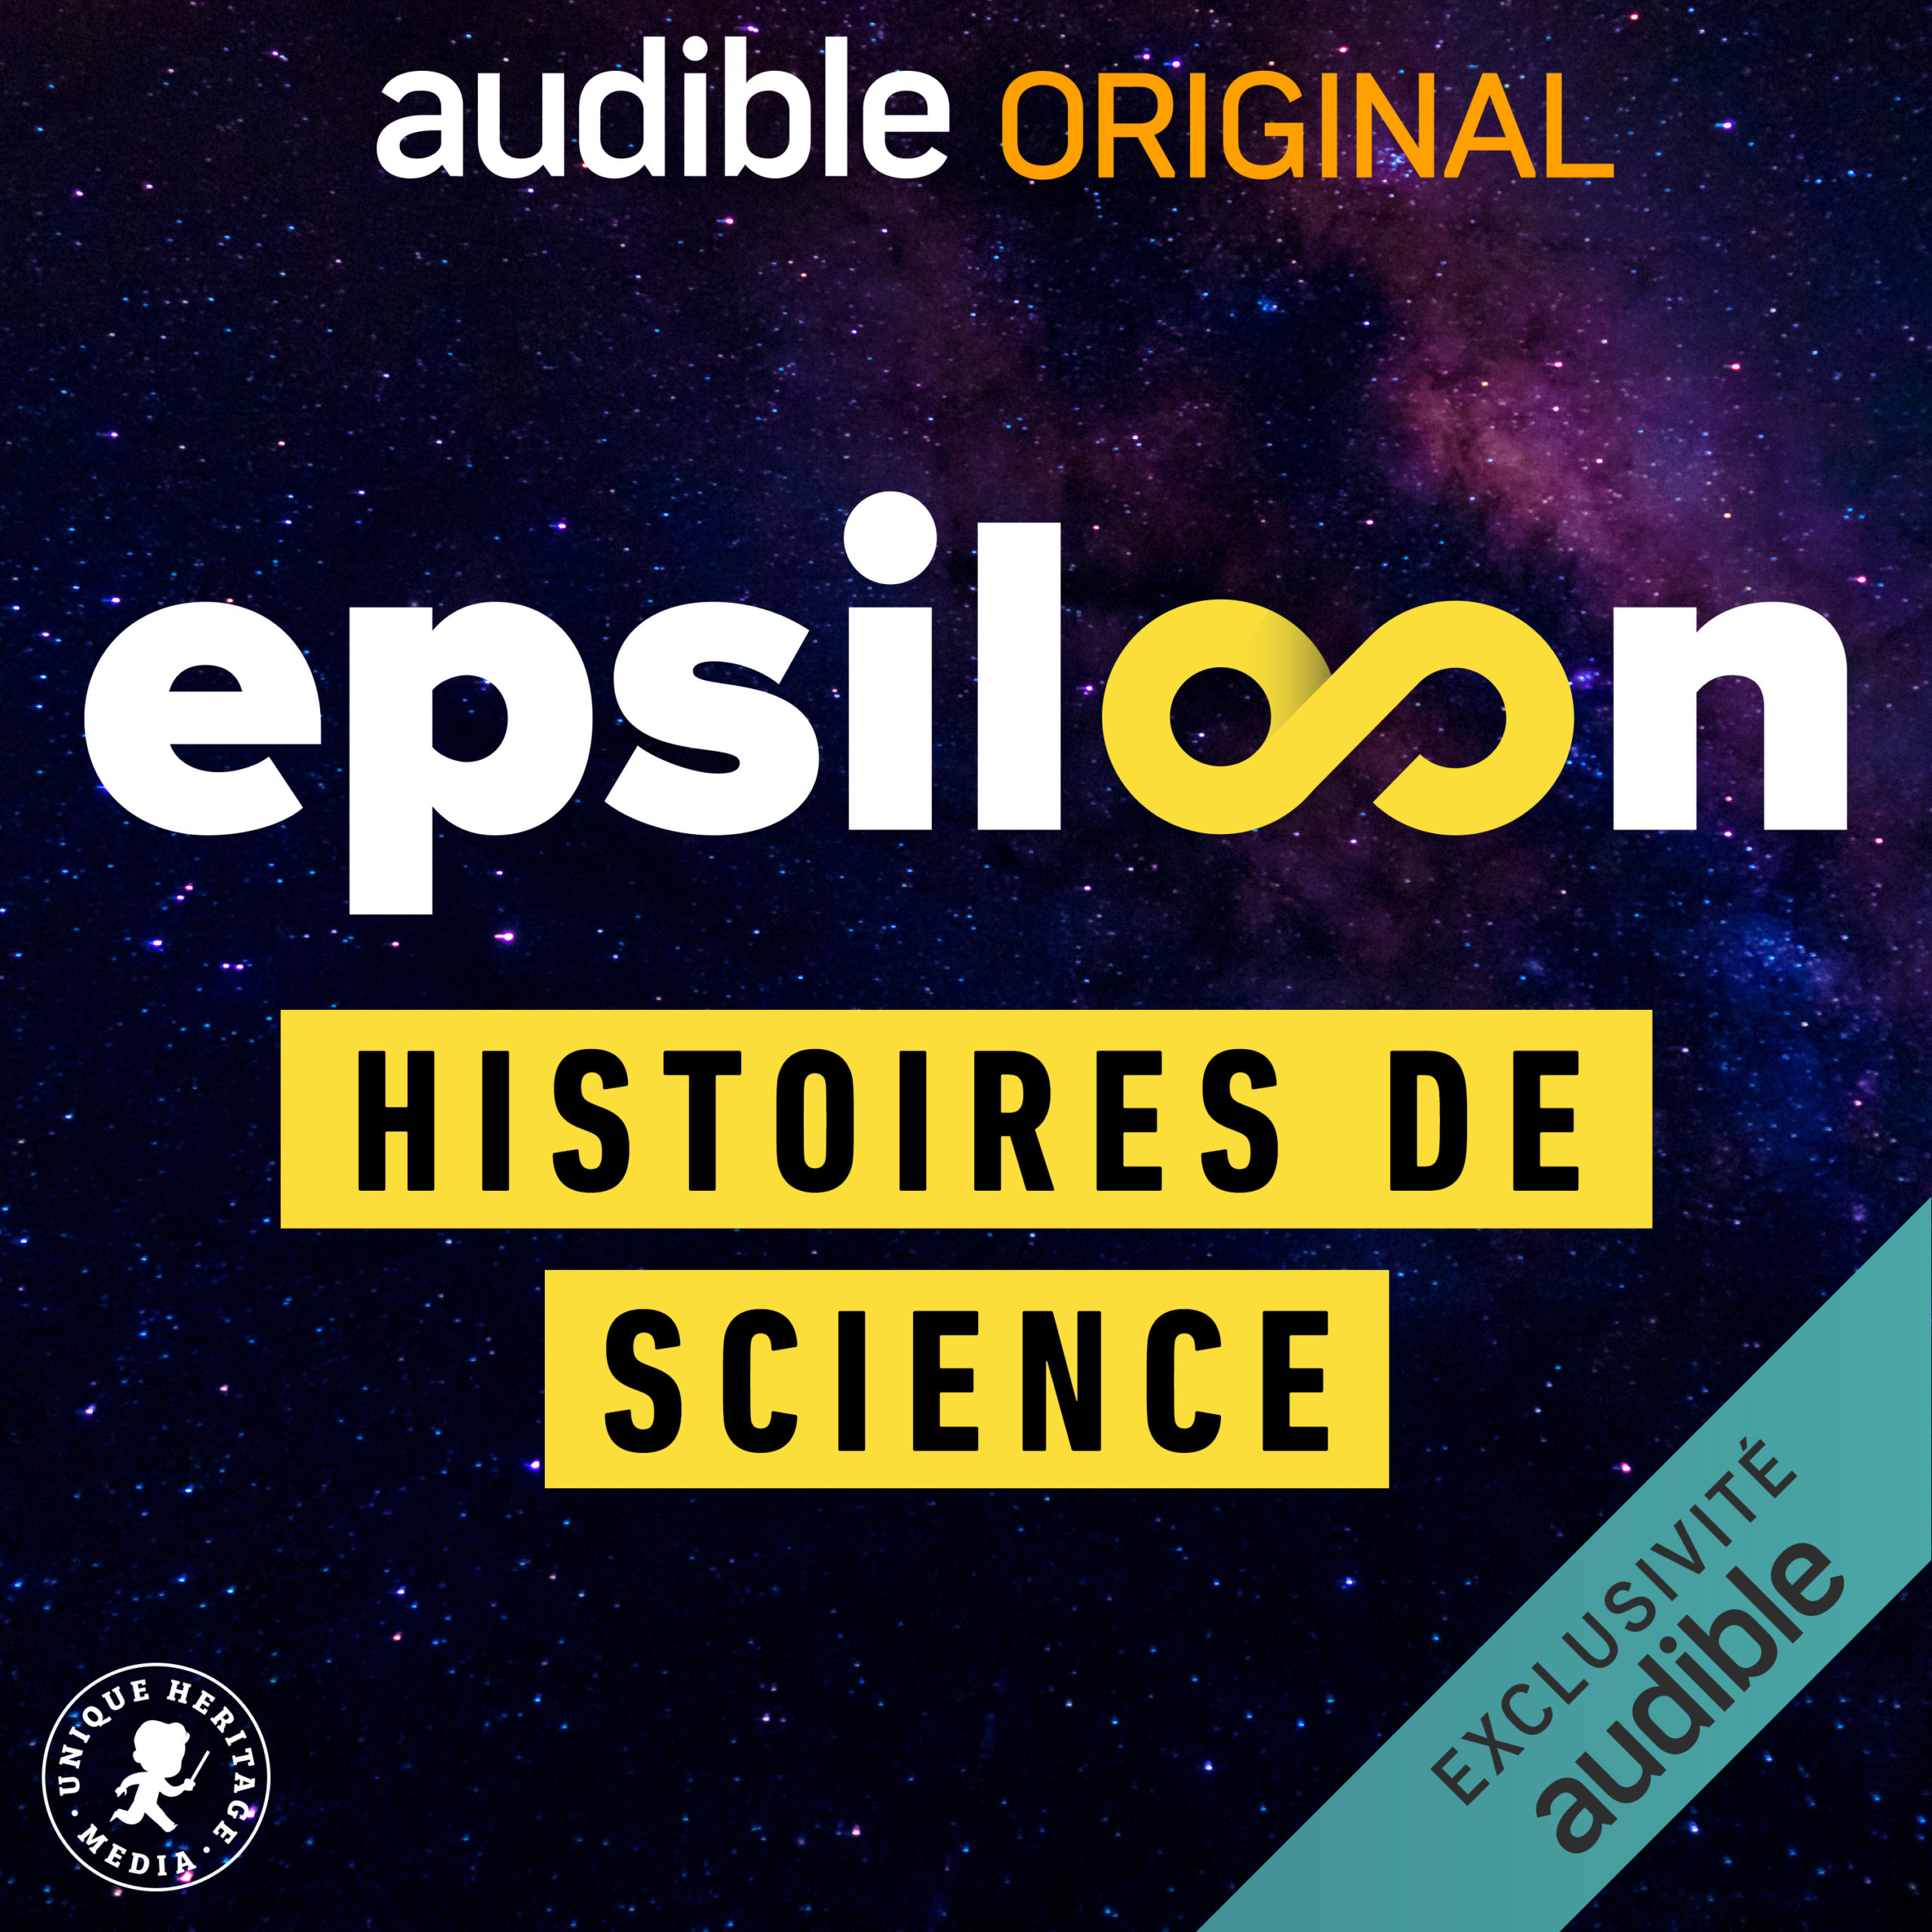 audible-epsiloon-generique